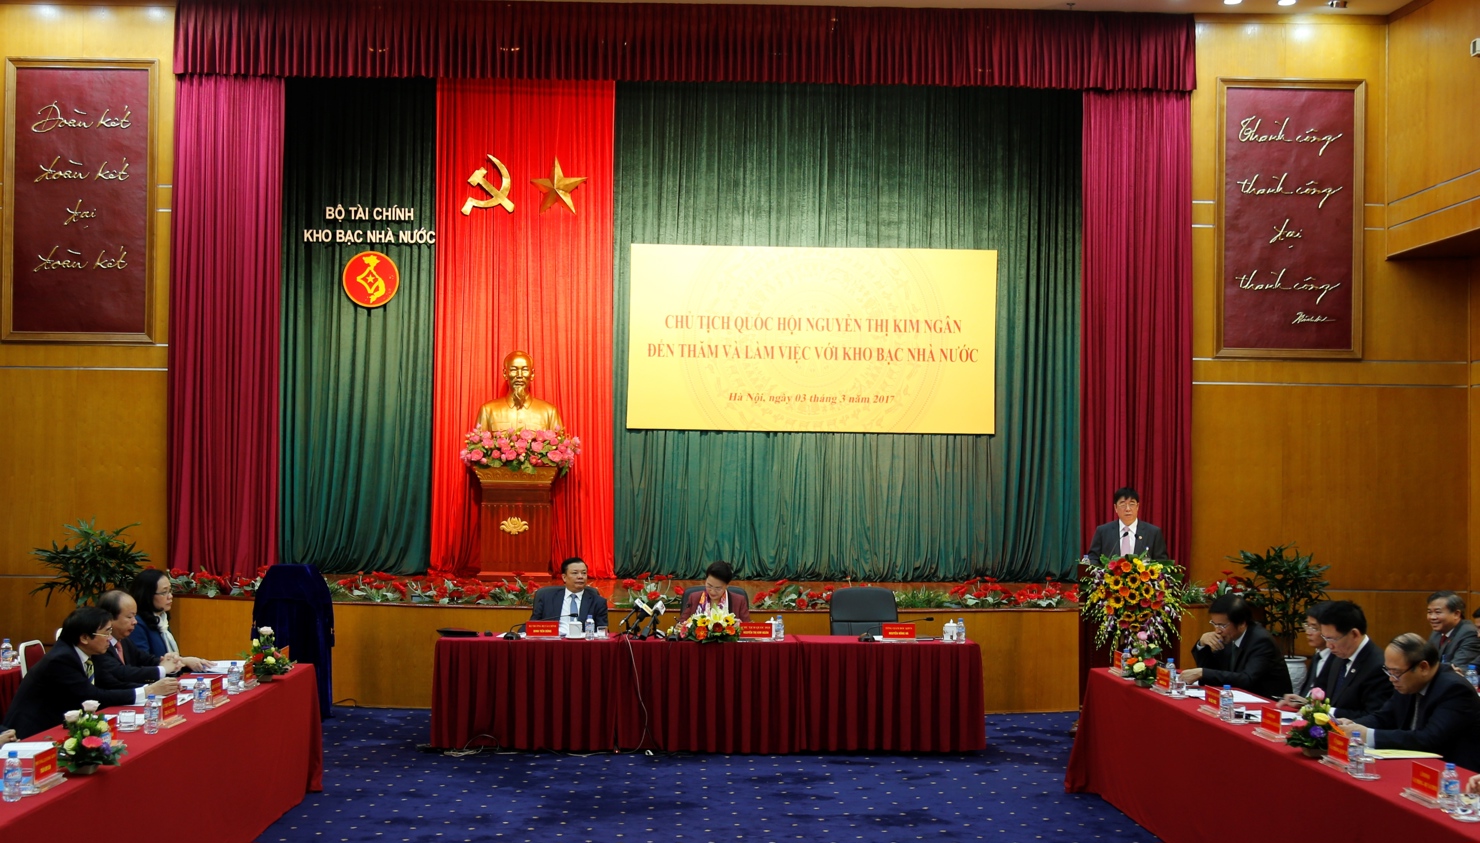 Tổng Giám đốc Kho bạc Nhà nước Nguyễn Hồng Hà báo cáo khái quát kết quả thực hiện chiến lược phát triển Kho bạc Nhà nước giai đoạn 2011-2016 và kế hoạch giai đoạn 2017-2020 của hệ thống. Nguồn: Lục Trường.